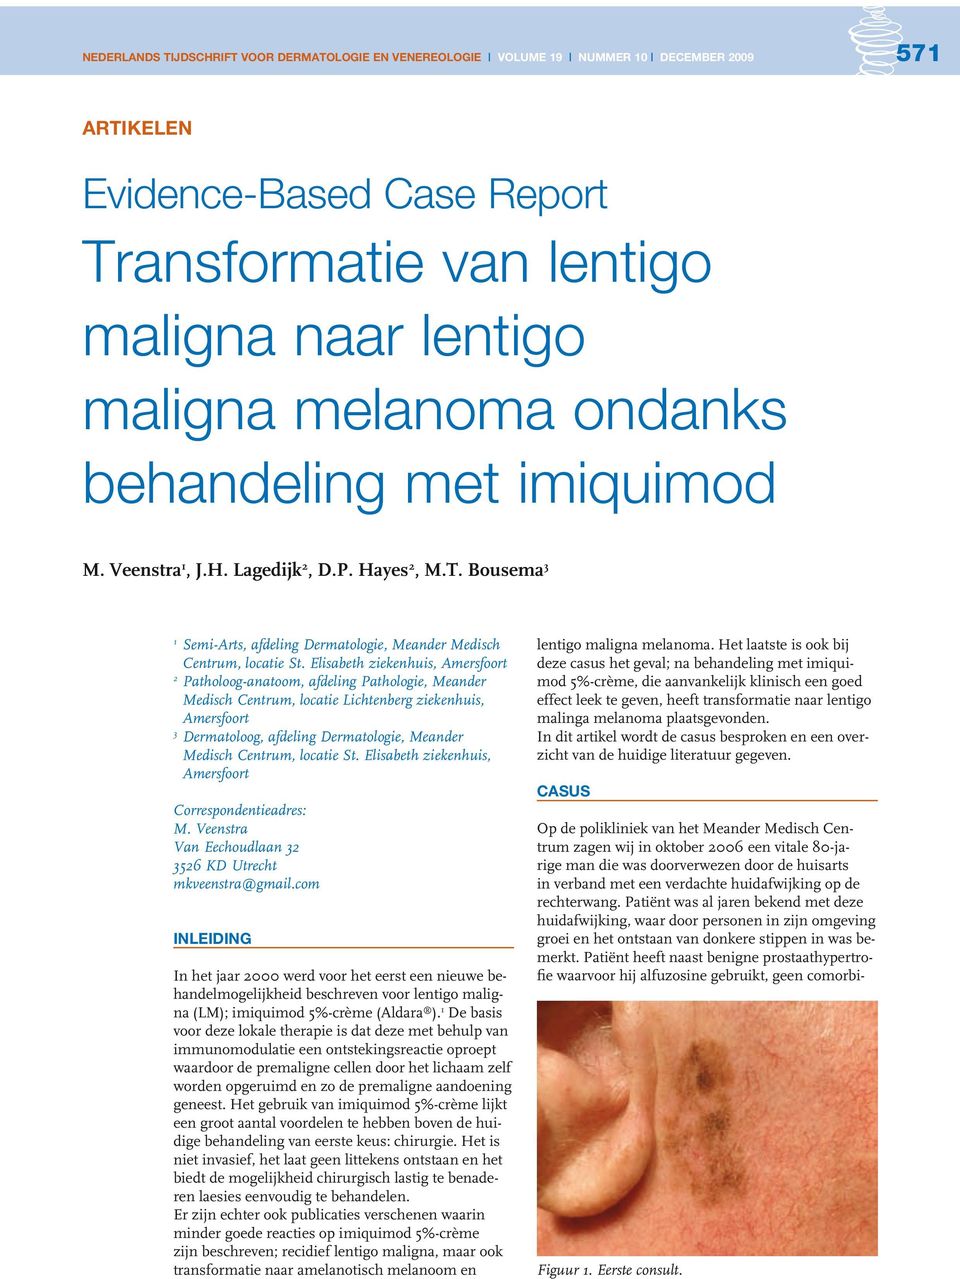 Patiënt heeft naast benigne prostaathypertrofie waarvoor hij alfuzosine gebruikt, geen comorbiartikelen Evidence-Based Case Report Transformatie van lentigo maligna naar lentigo maligna melanoma